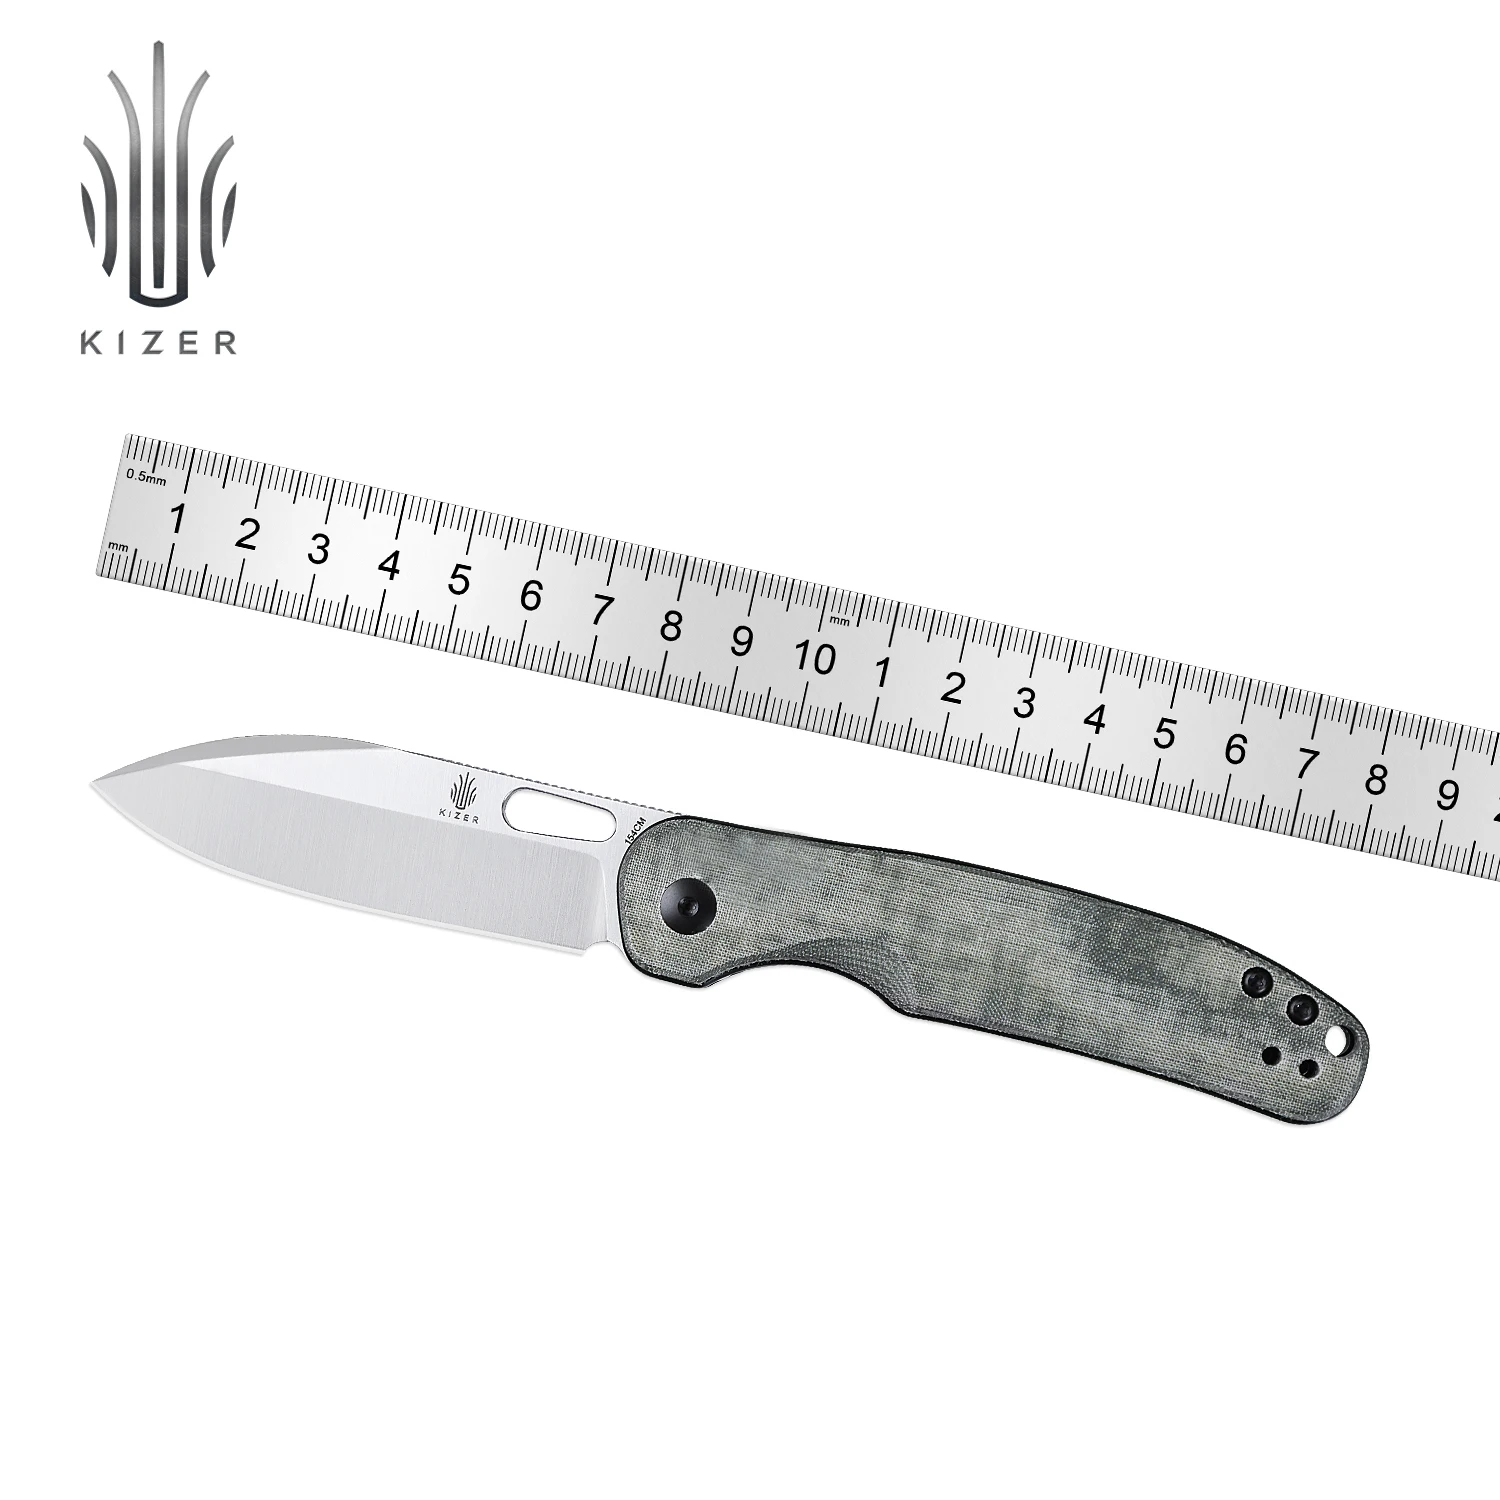 

Kizer Knife Pocket HIC-CUP V3606C1/V3606C2 Folding Knife with Green Micarta or Black Richlite Handle Camping Tools